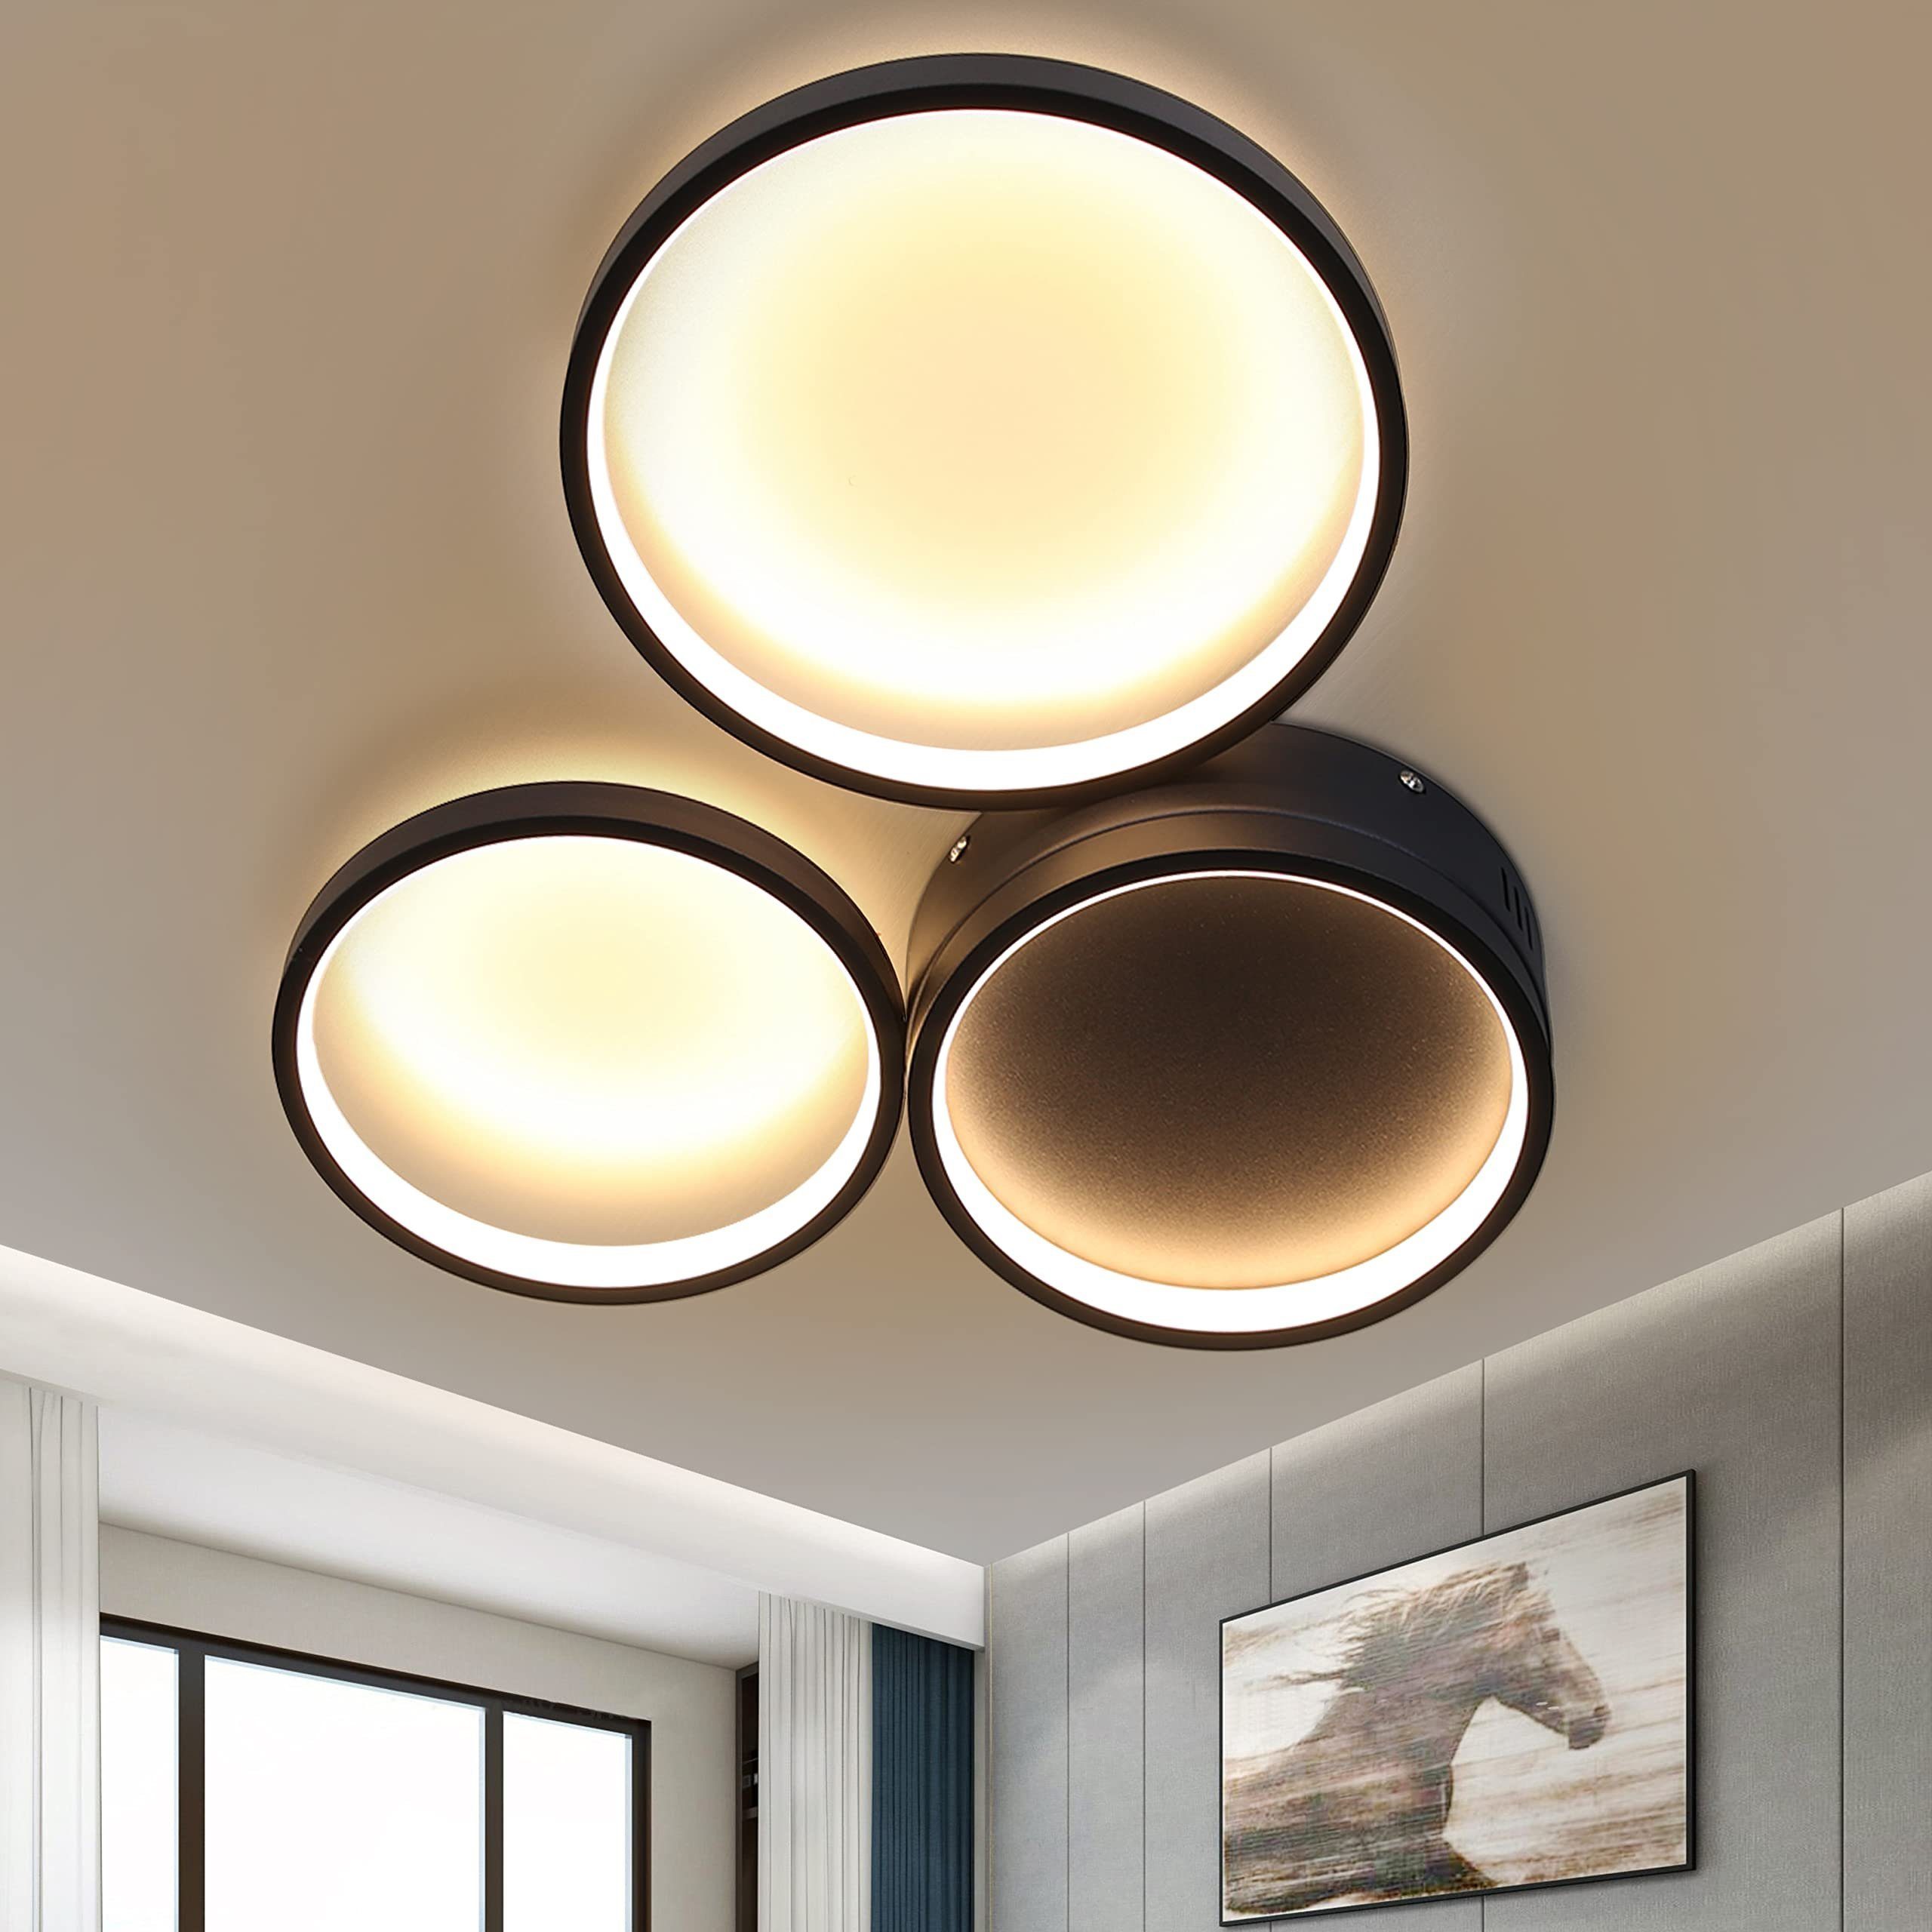 LED Deckenlampe Design Style Wohn Schlaf Zimmer Diele Leuchten Küchen Flur Lampe 